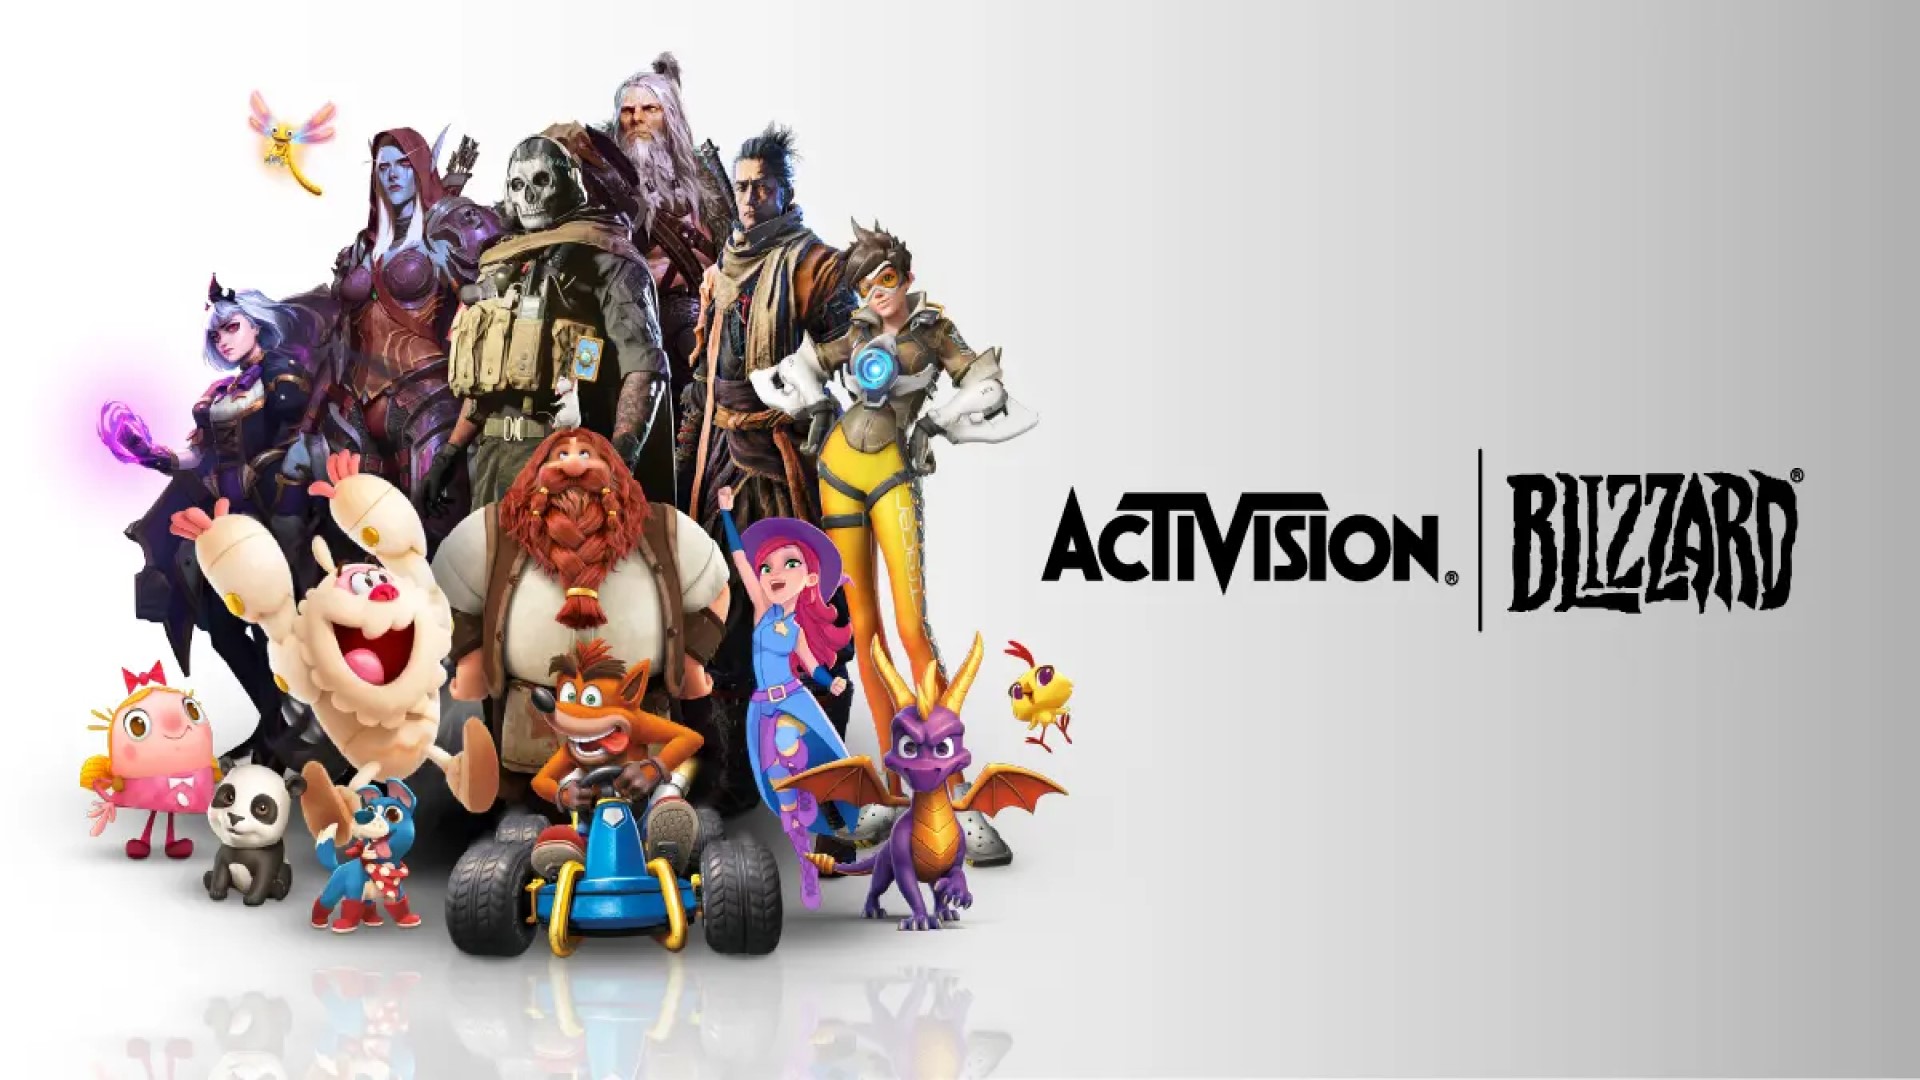 Personnages de la mascotte Activision Blizzard